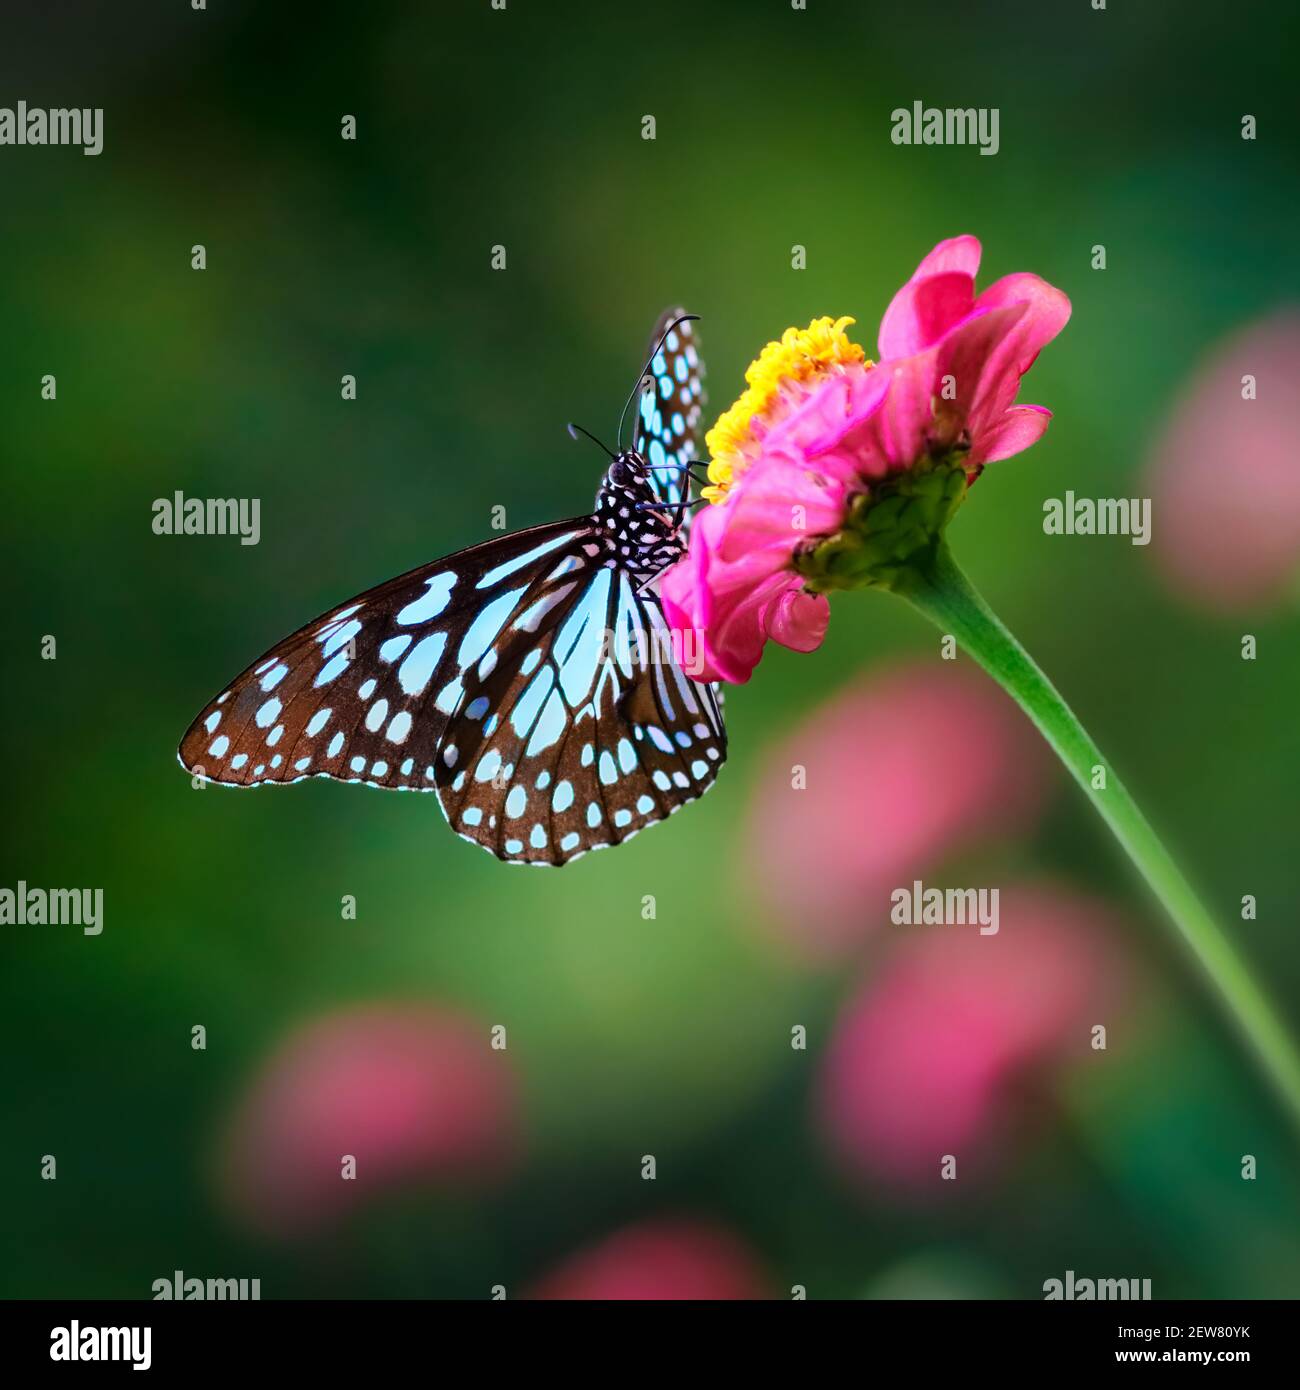 Mariposa Azul Tigre o danaid Tirumala limniace en un rosa flor zinnia con fondo de bokeh borroso de color verde oscuro Foto de stock